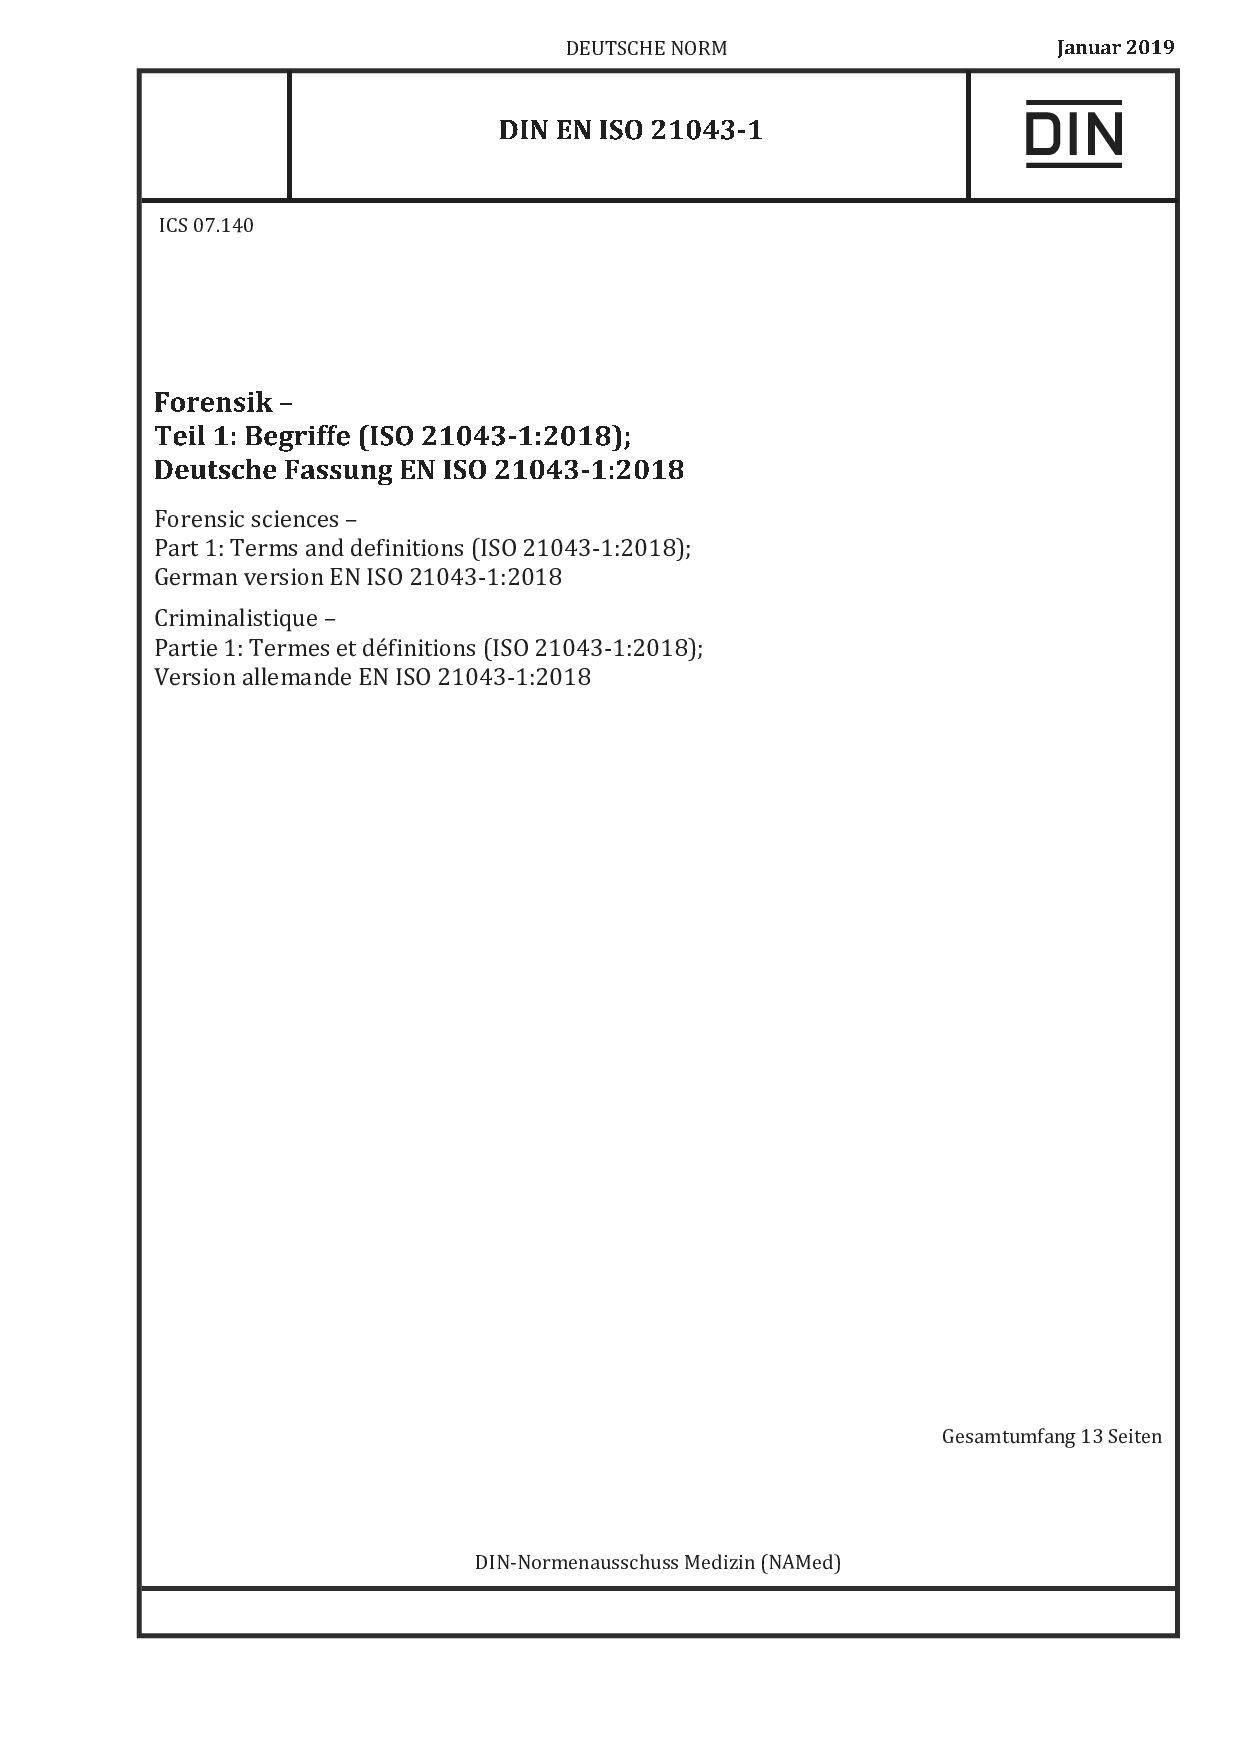 DIN EN ISO 21043-1:2019-01